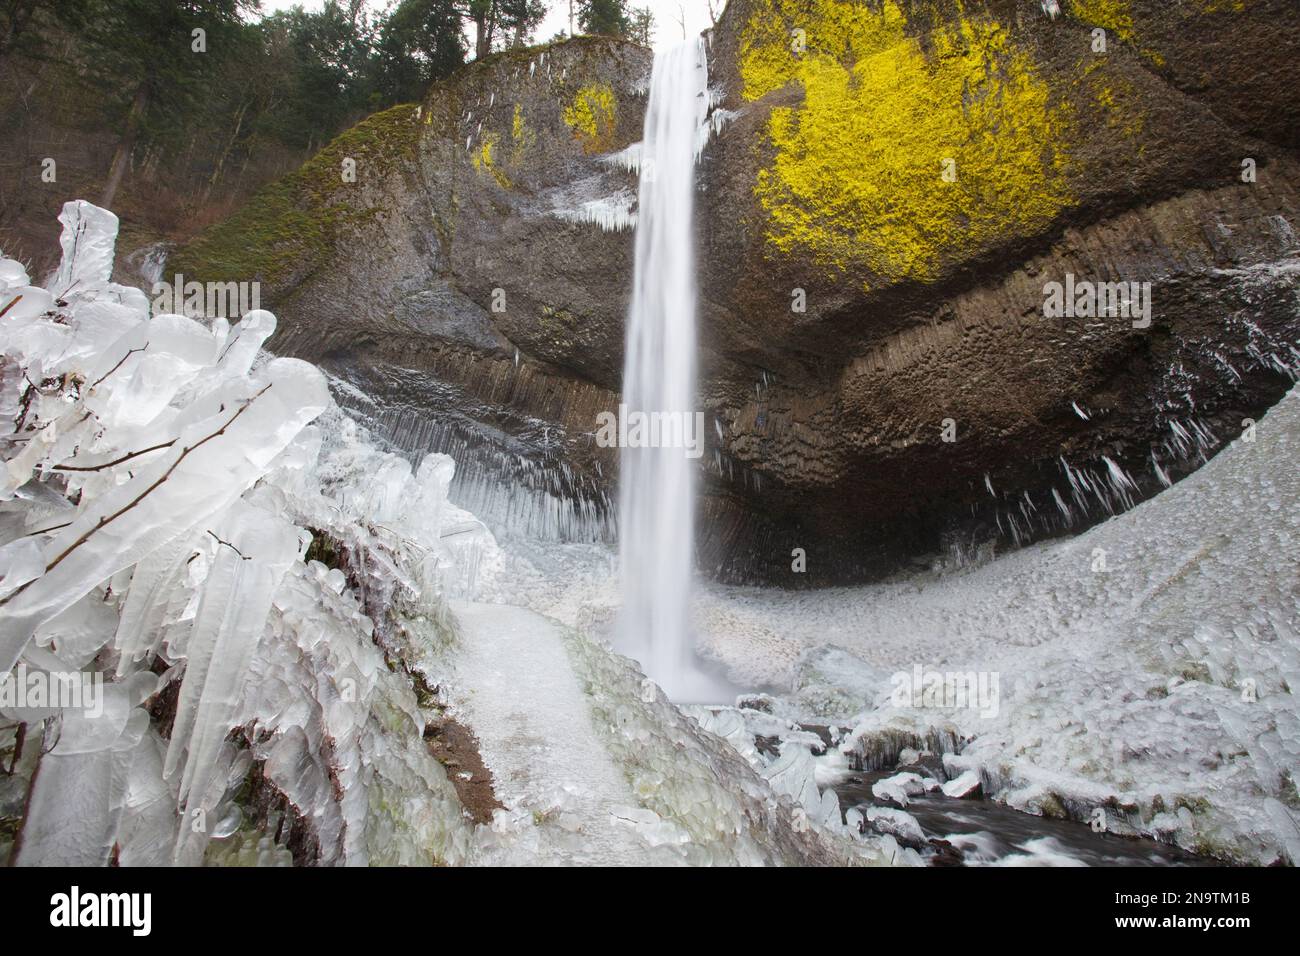 Nahaufnahme des Wintereises nach einem Sturm entlang der Latourell Falls, Columbia River Gorge National Scenic Area, Oregon, USA; Oregon, Vereinigte Staaten von Amerika Stockfoto